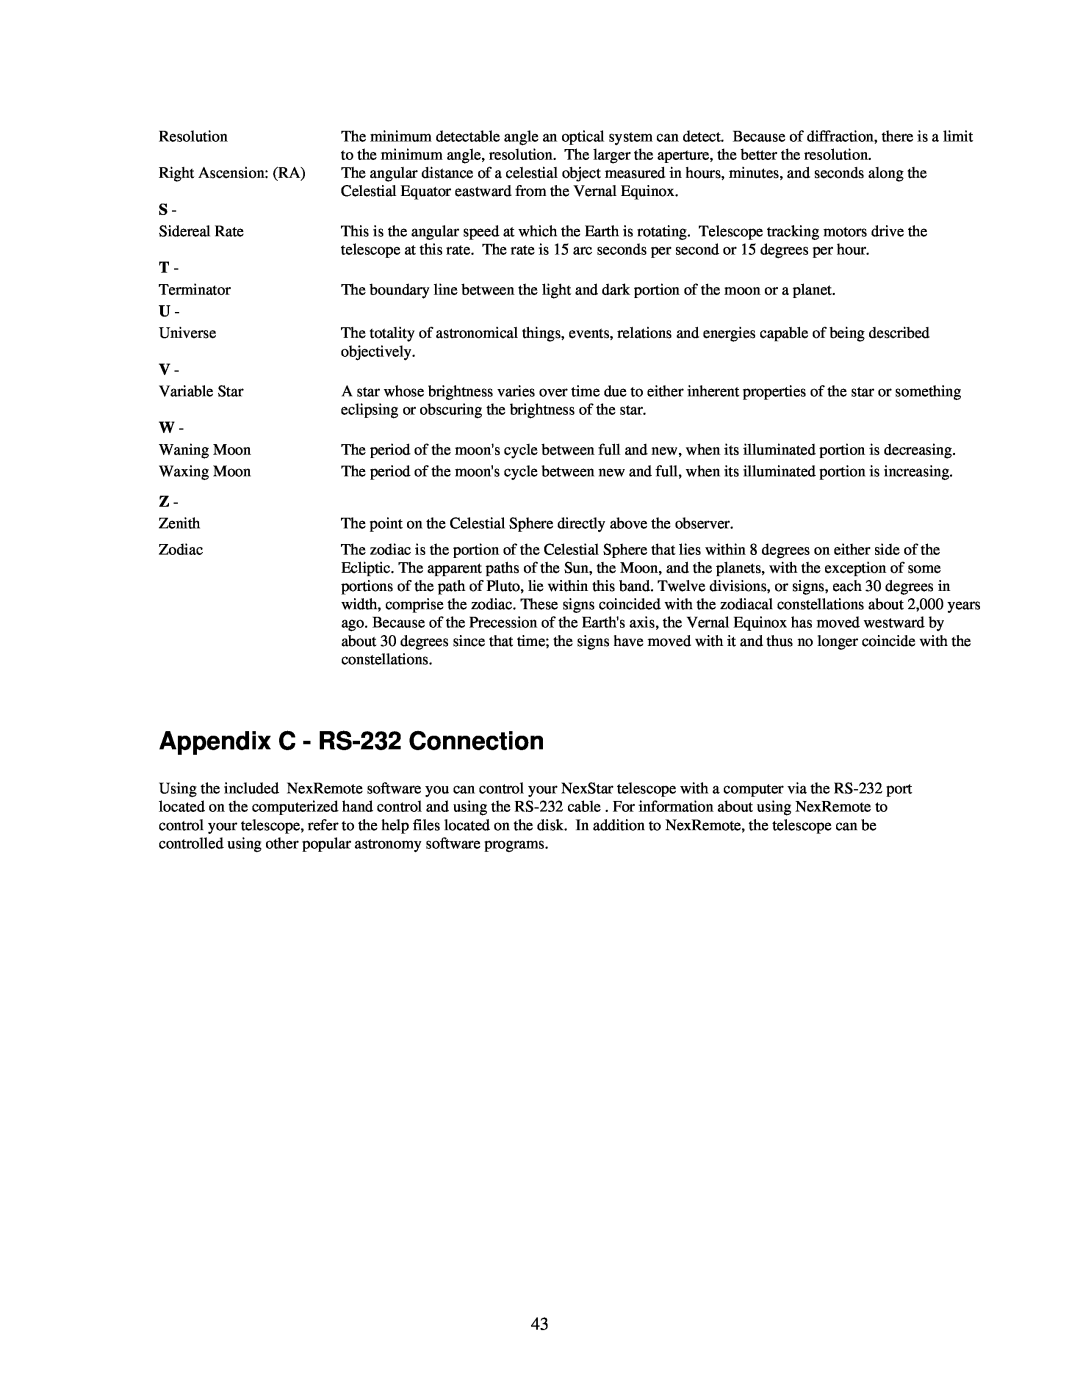 Celestron 4SE instruction manual Appendix C - RS-232 Connection 